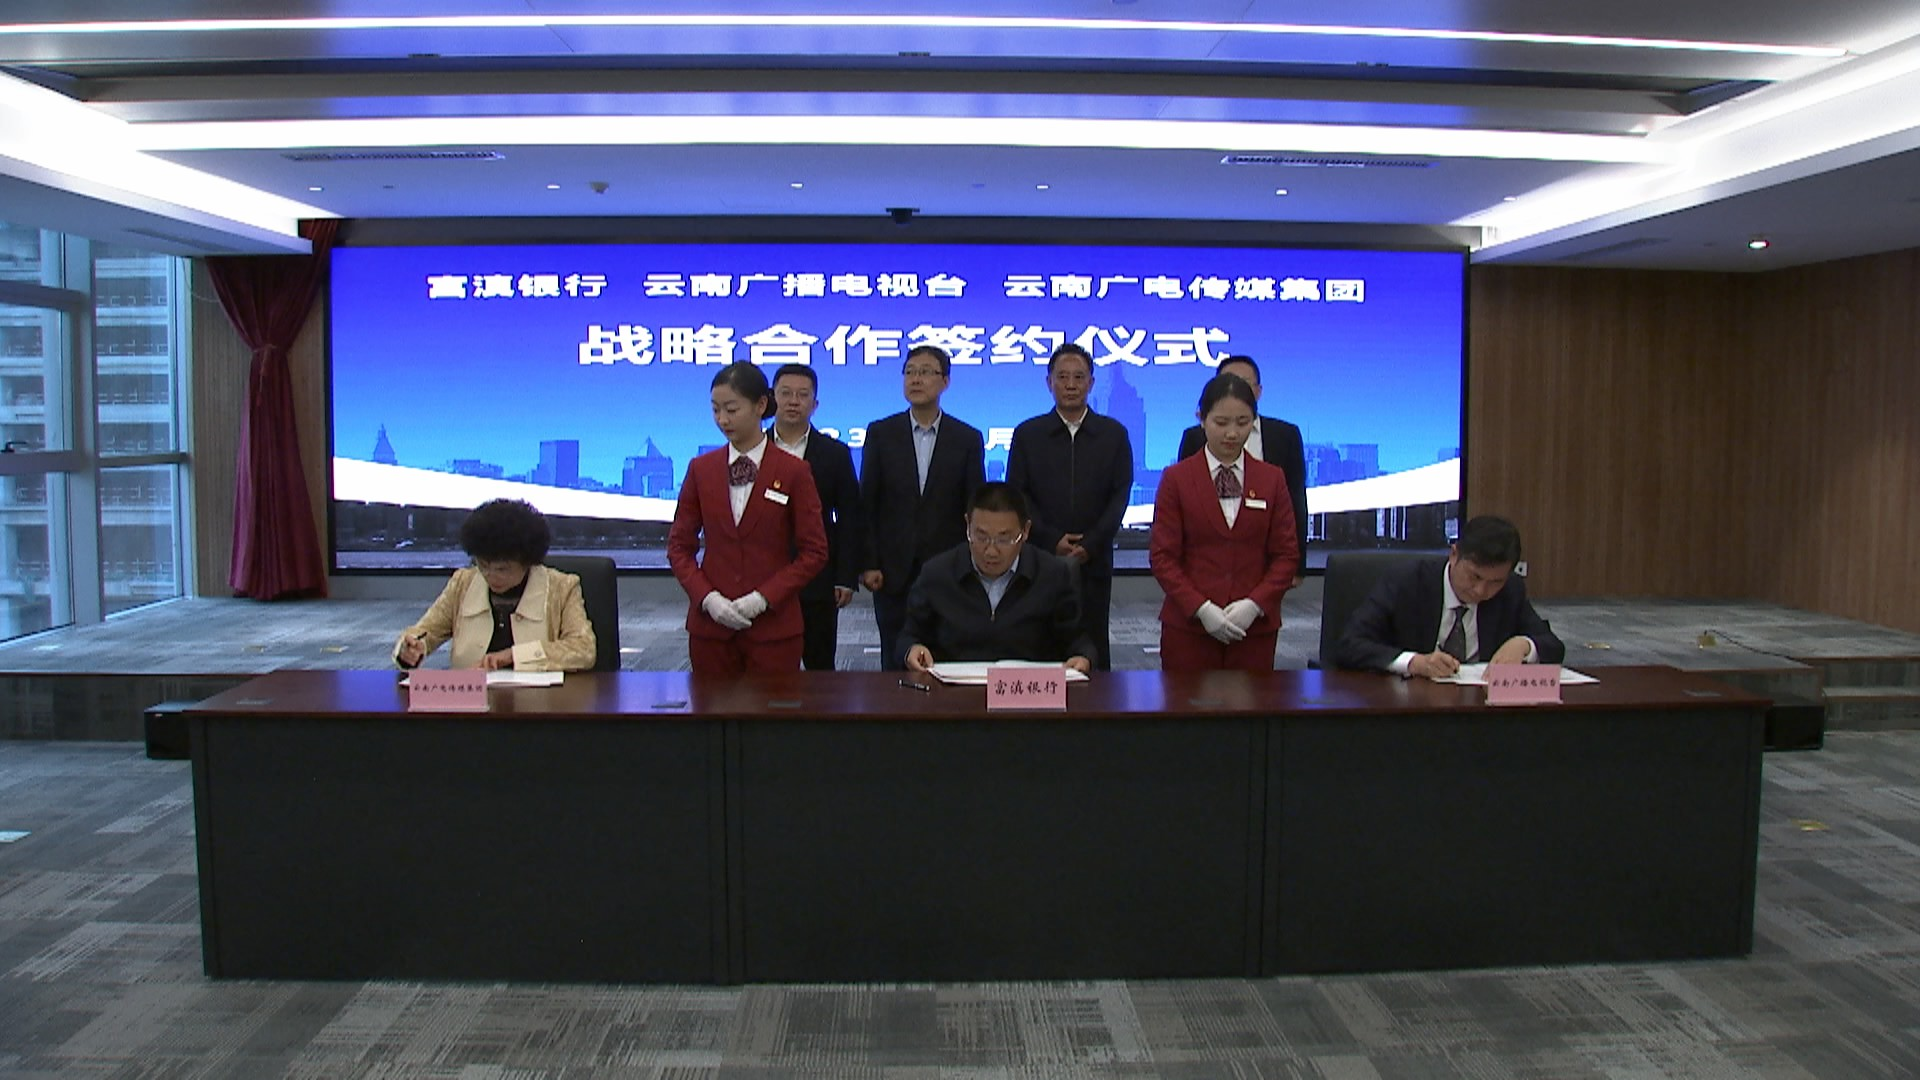 强强联手丨云南广播电视台 云南广电传媒集团与富滇银行签署战略合作协议